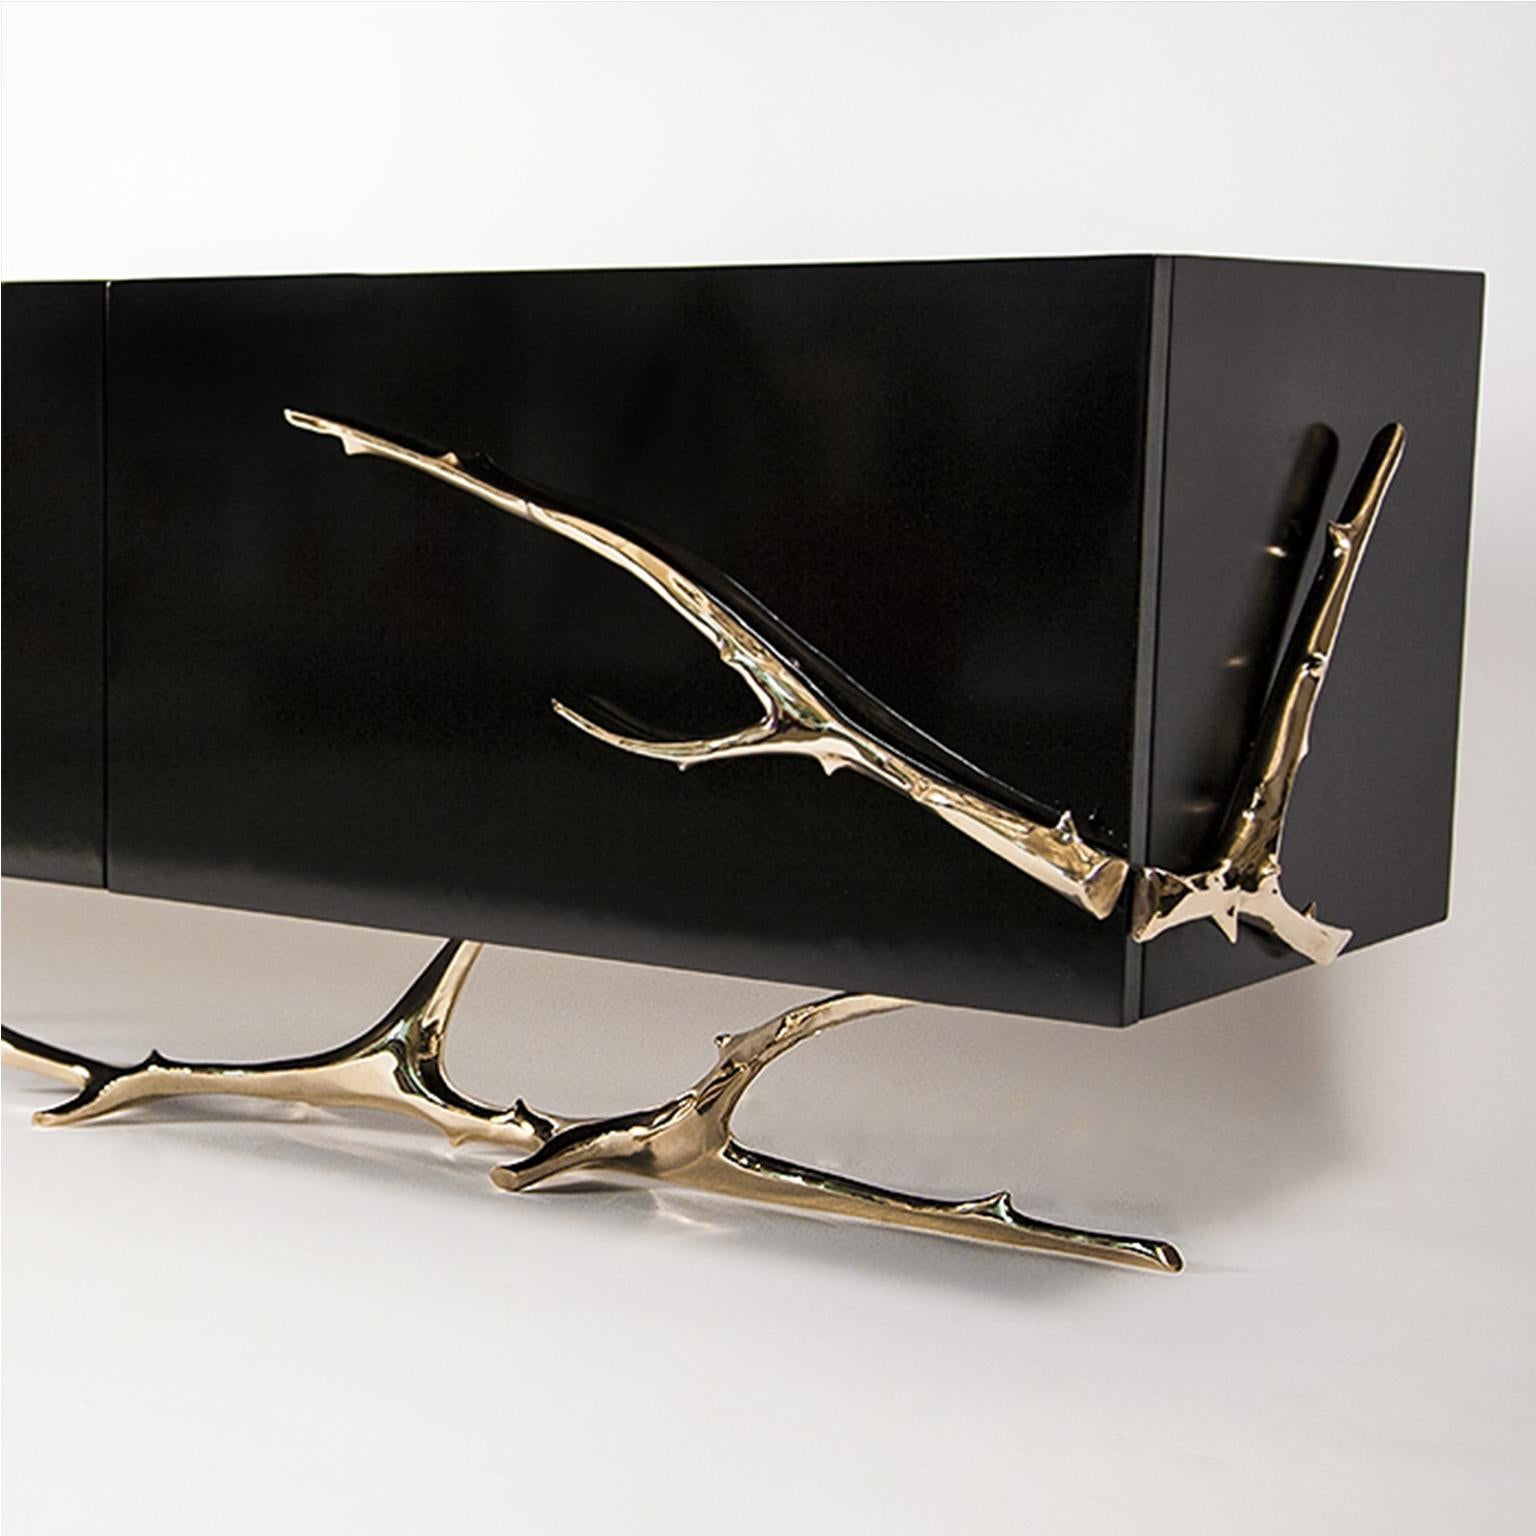 La crédence Meta de Barlas Baylar est un objet d'art fonctionnel composé d'un boîtier en laque noir piano élégamment soutenu par des branches en bronze poli ou en acier inoxydable.  Le résultat est la décadente Meta Credenza qui rehausse l'ambiance